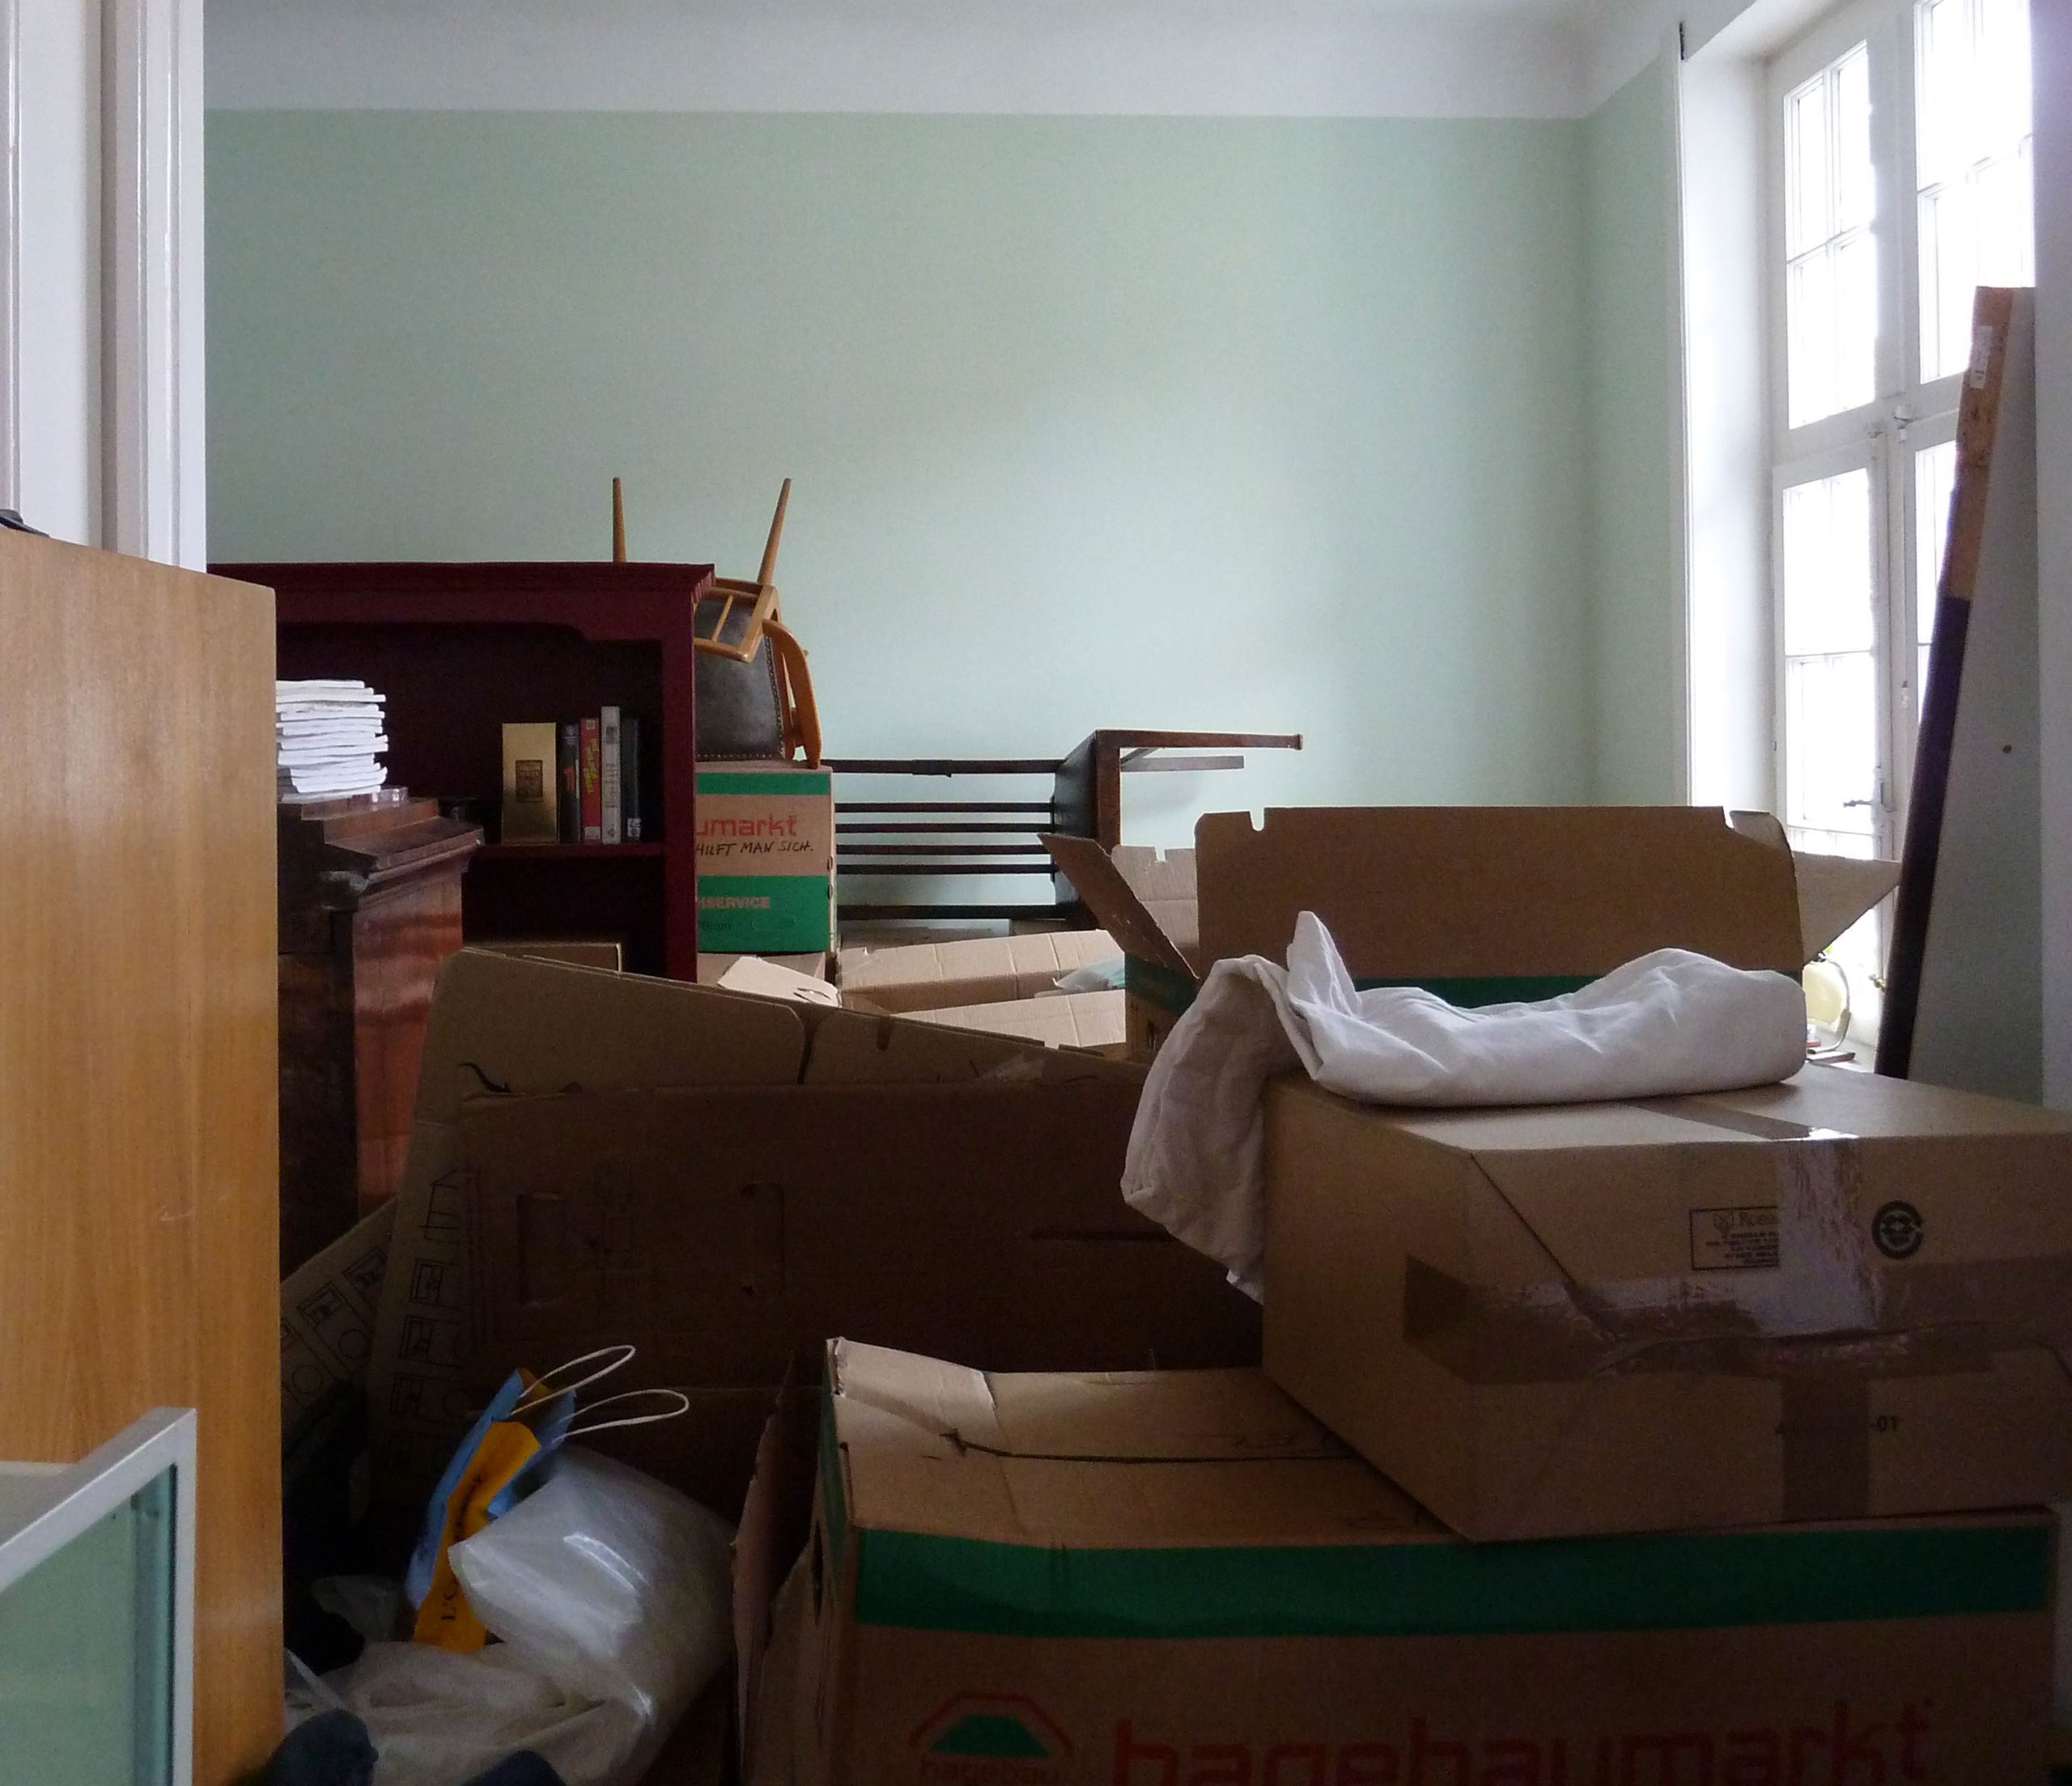 Ansicht eines Zimmers mitten im Umzug mit gestapelten Möbeln und Kartons